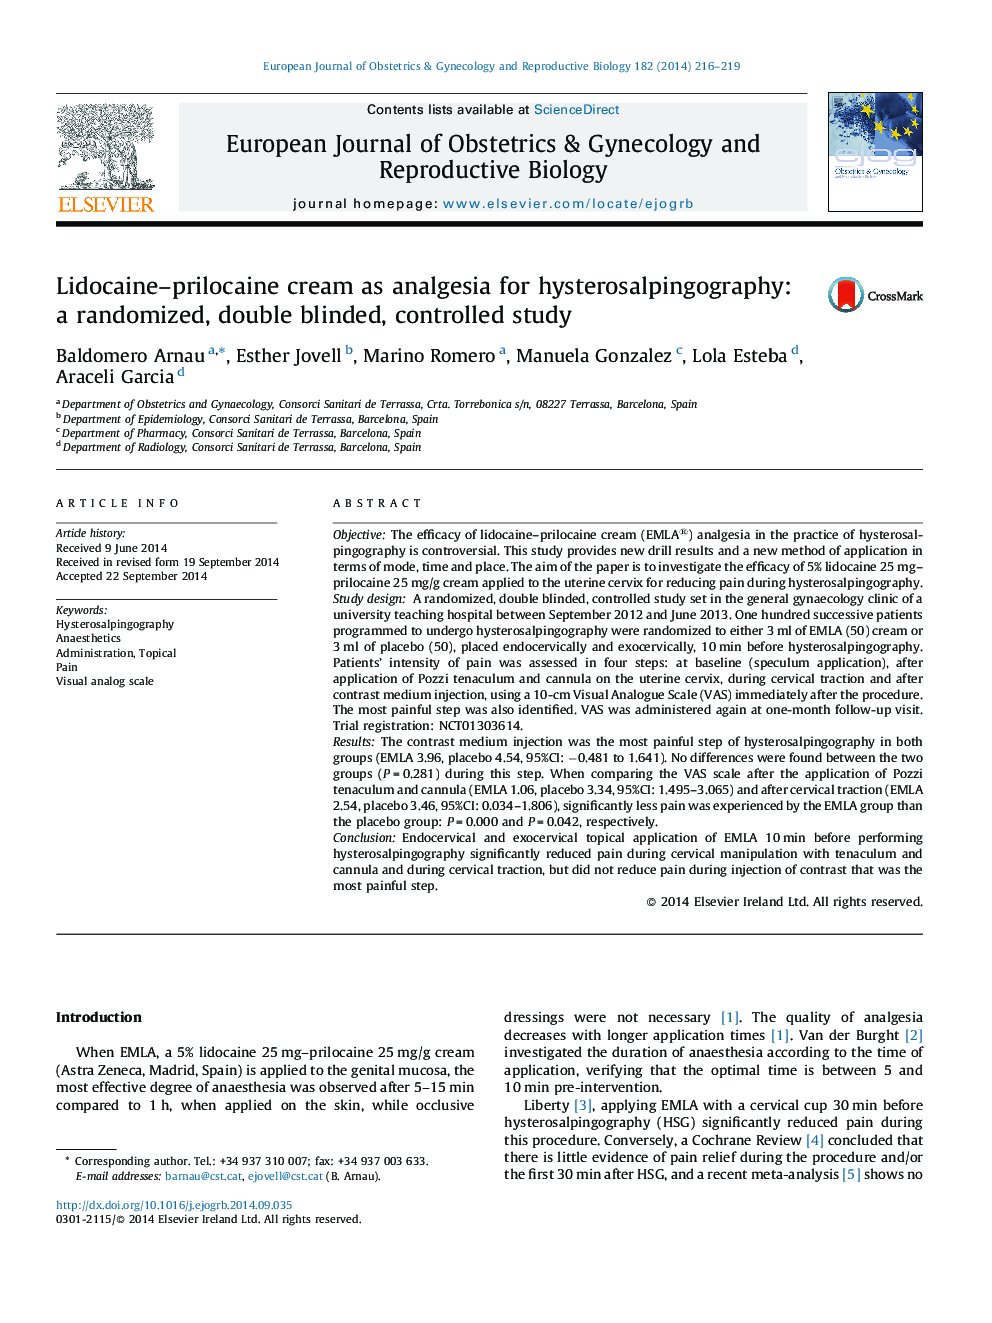 کرم لیدوکائین-پریلوکائین به عنوان ضد درد برای هیستروسالپنجوگرافی: یک مطالعه تصادفی، دو سوخته، کنترل شده 